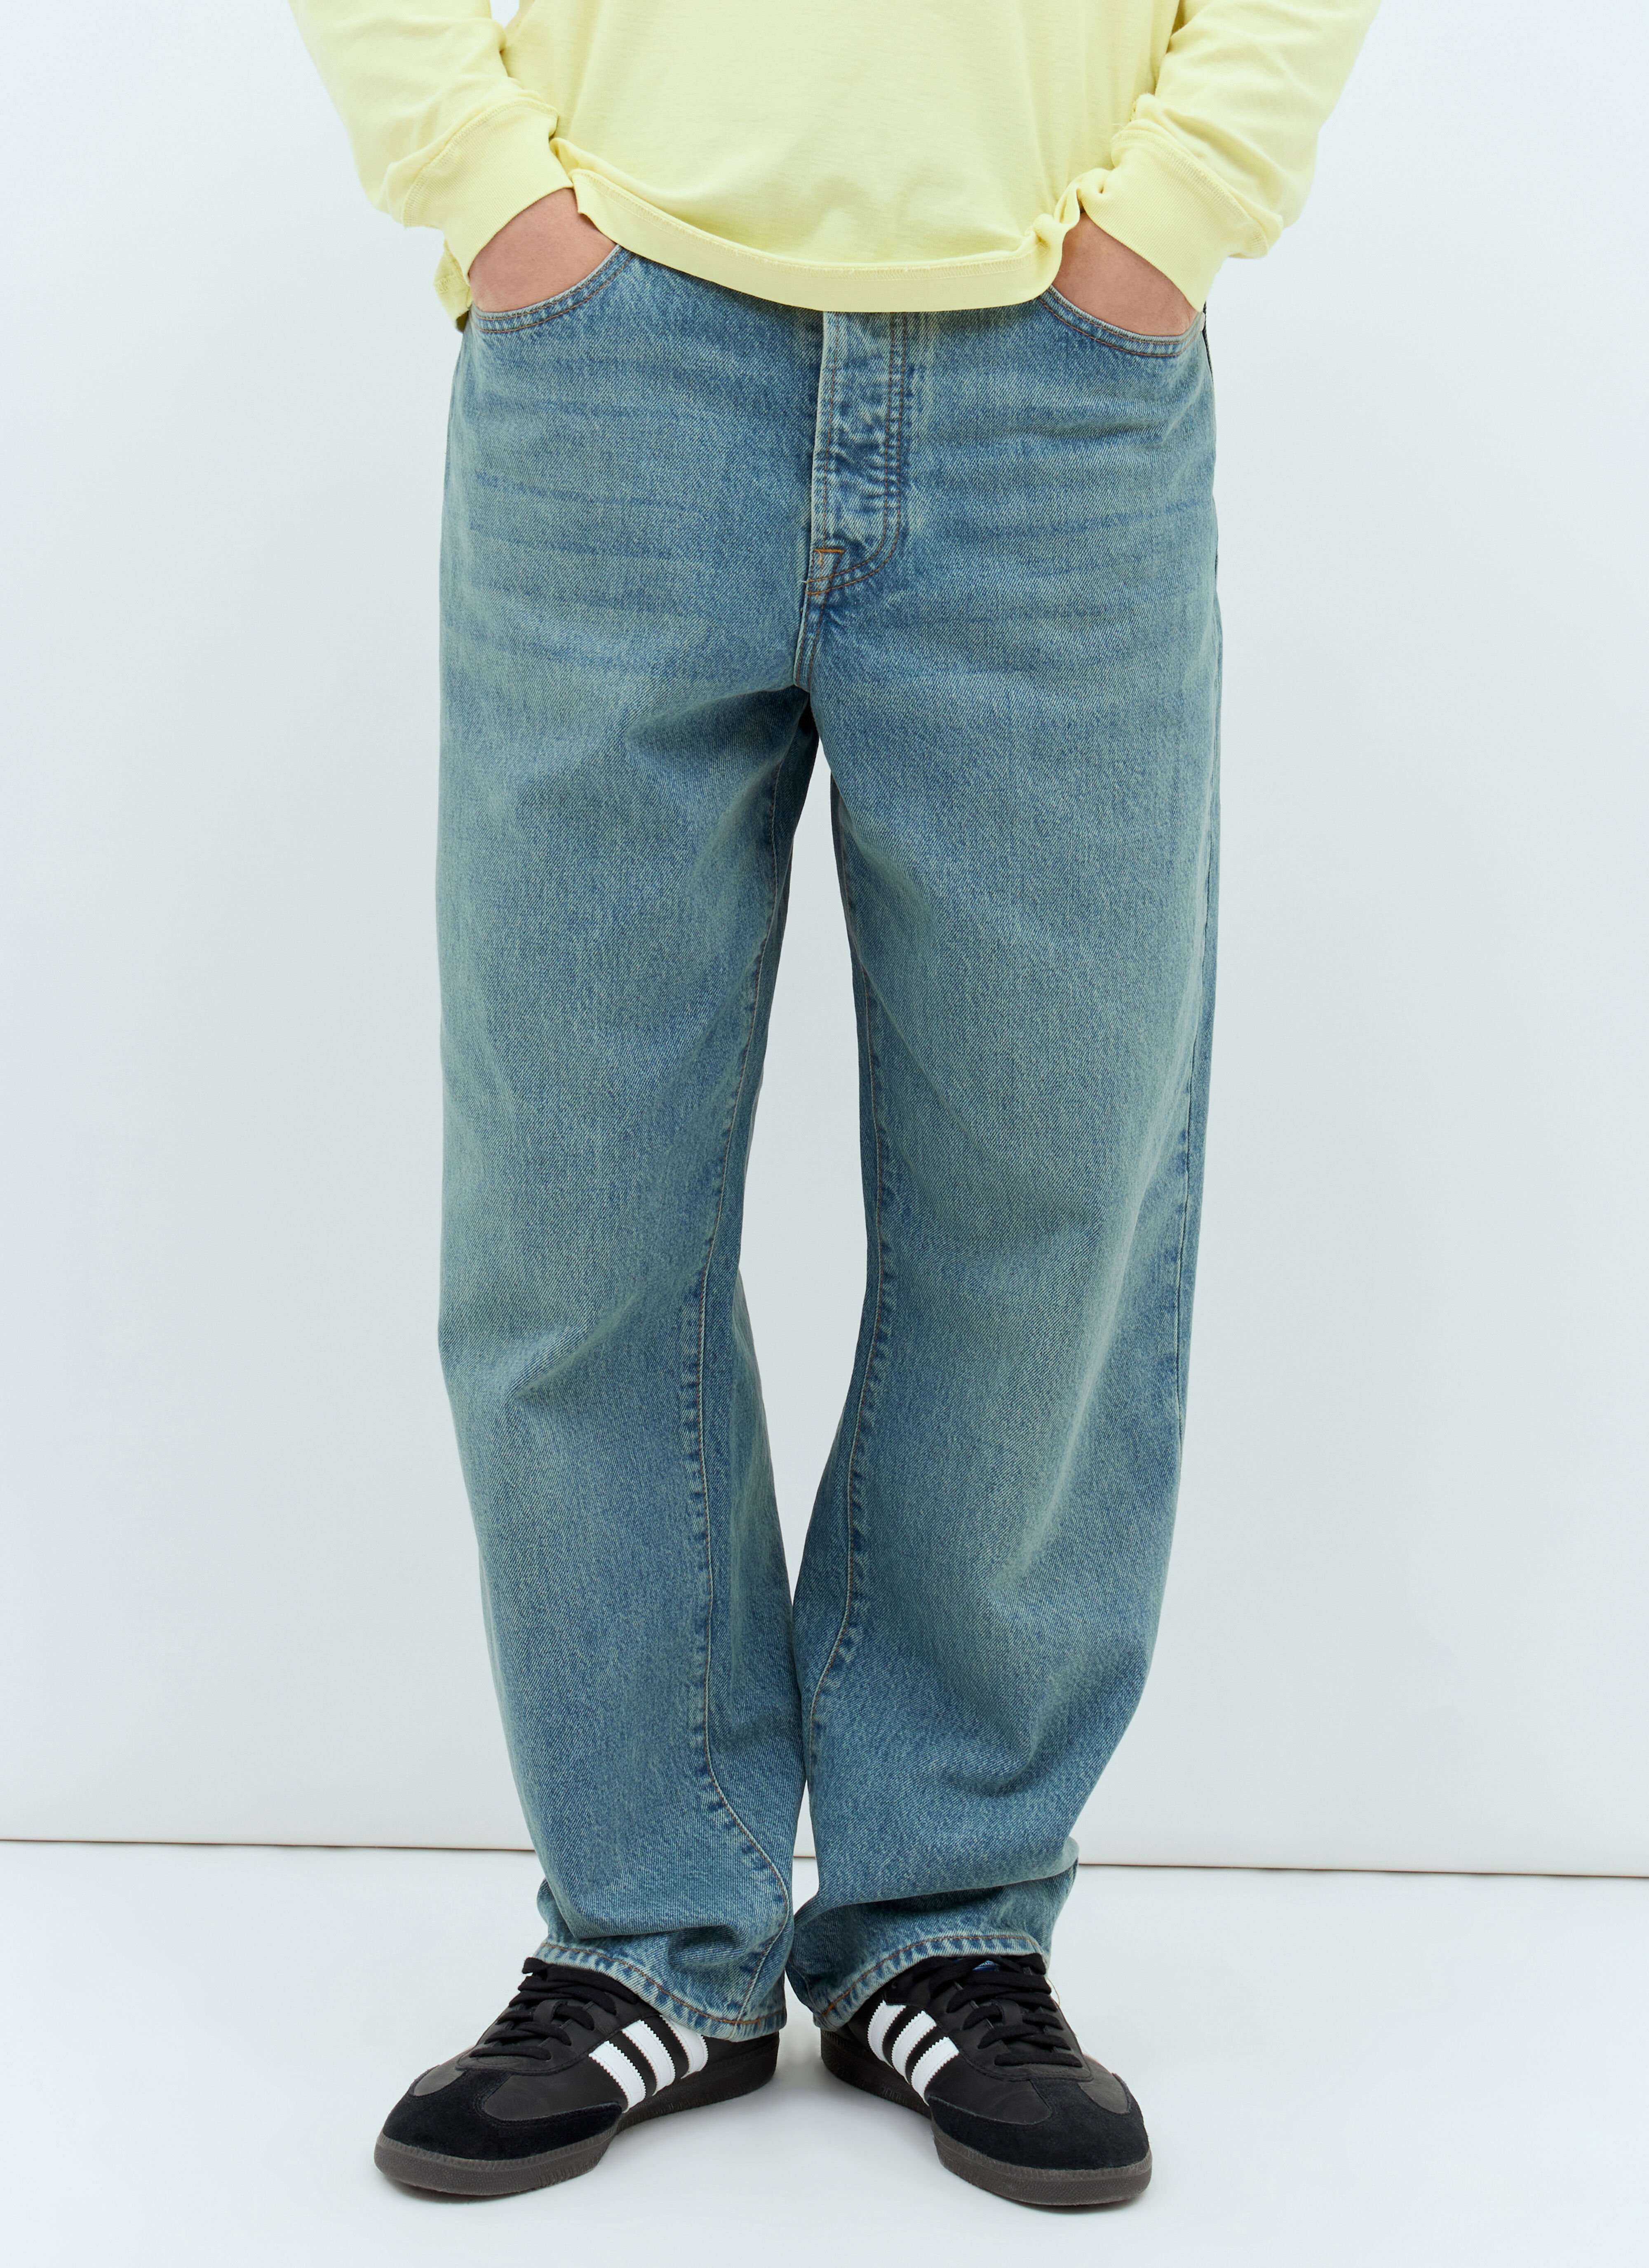 Vivienne Westwood Big Ol Jeans Cream vvw0157004